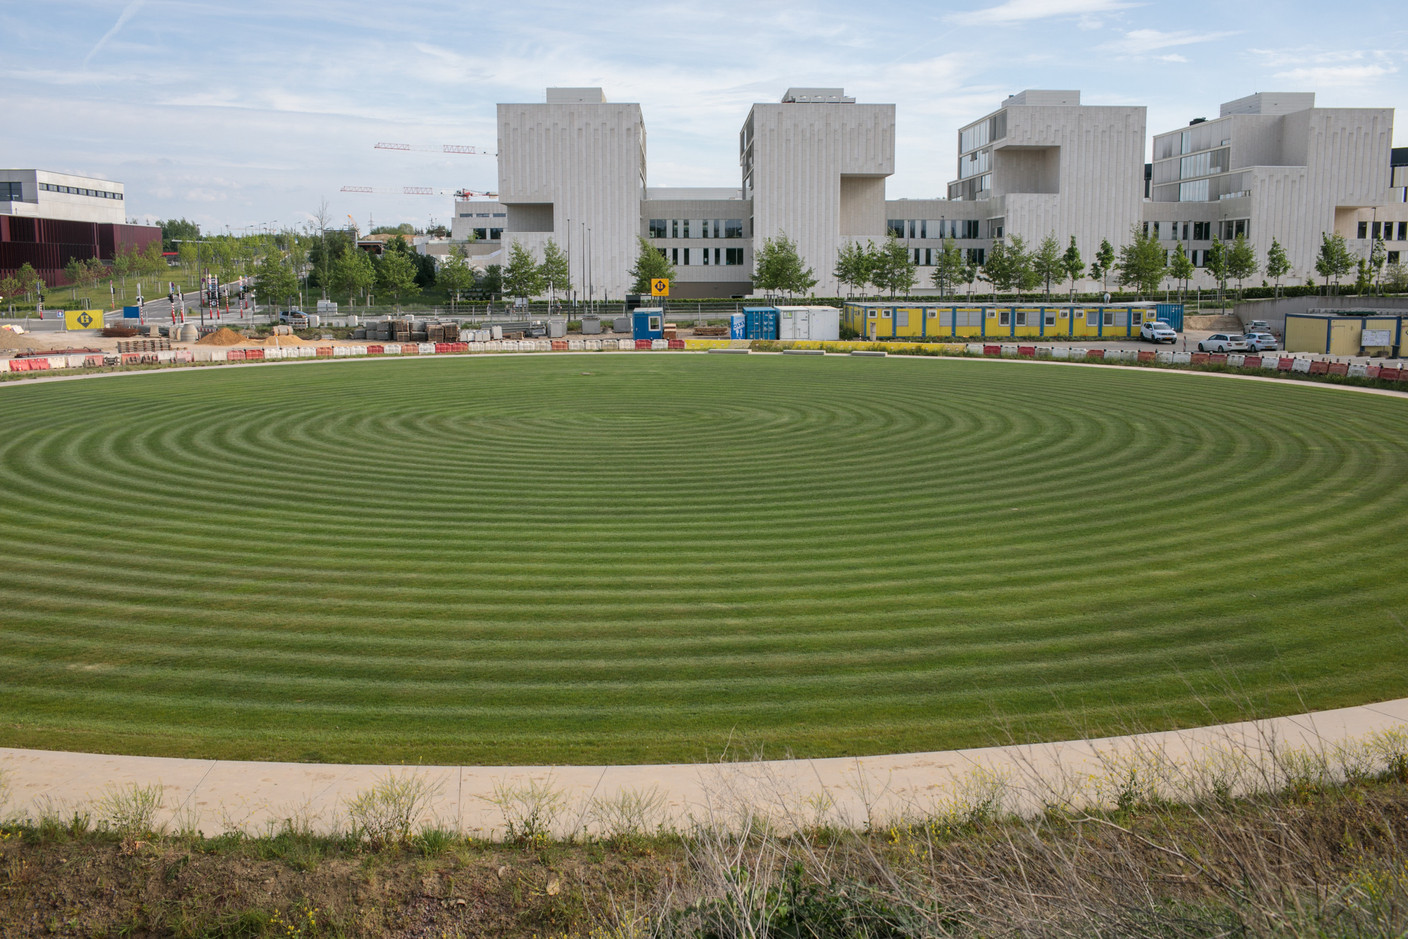 Les élèves de l’école Vauban pourront aussi profiter de ce vaste parc. (Photo: Matic Zorman/Maison Moderne)